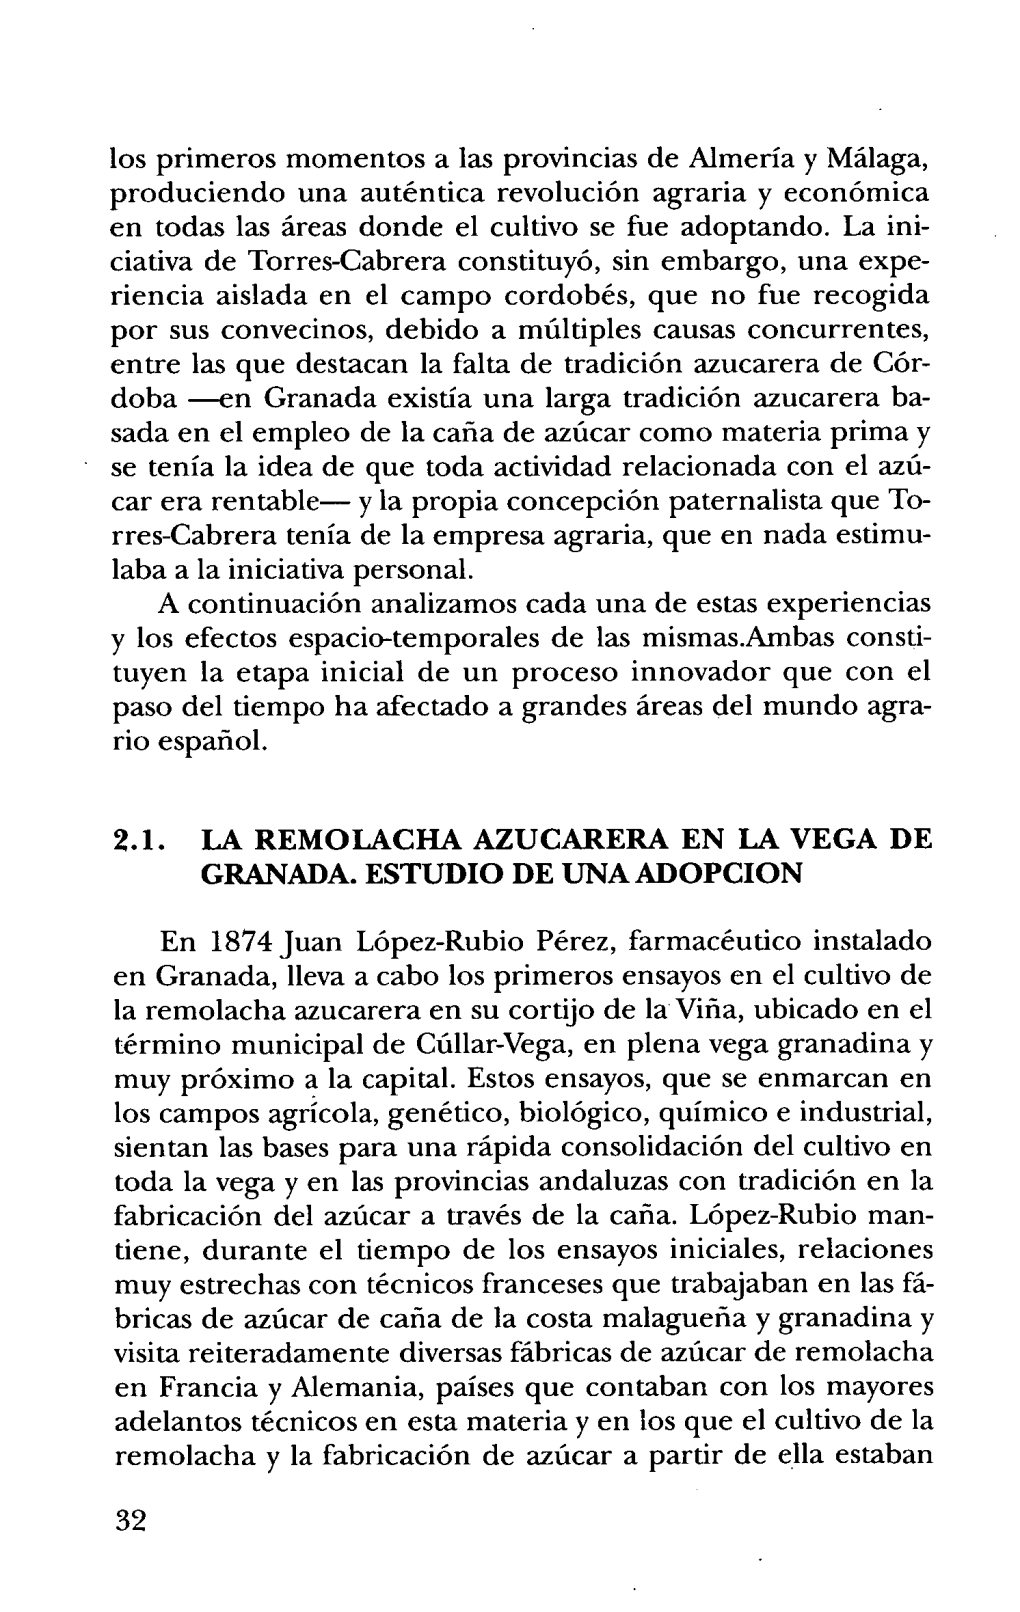 2.1. La Remolacha Azucarera En La Vega De Granada. Estudio De Una Adopcion